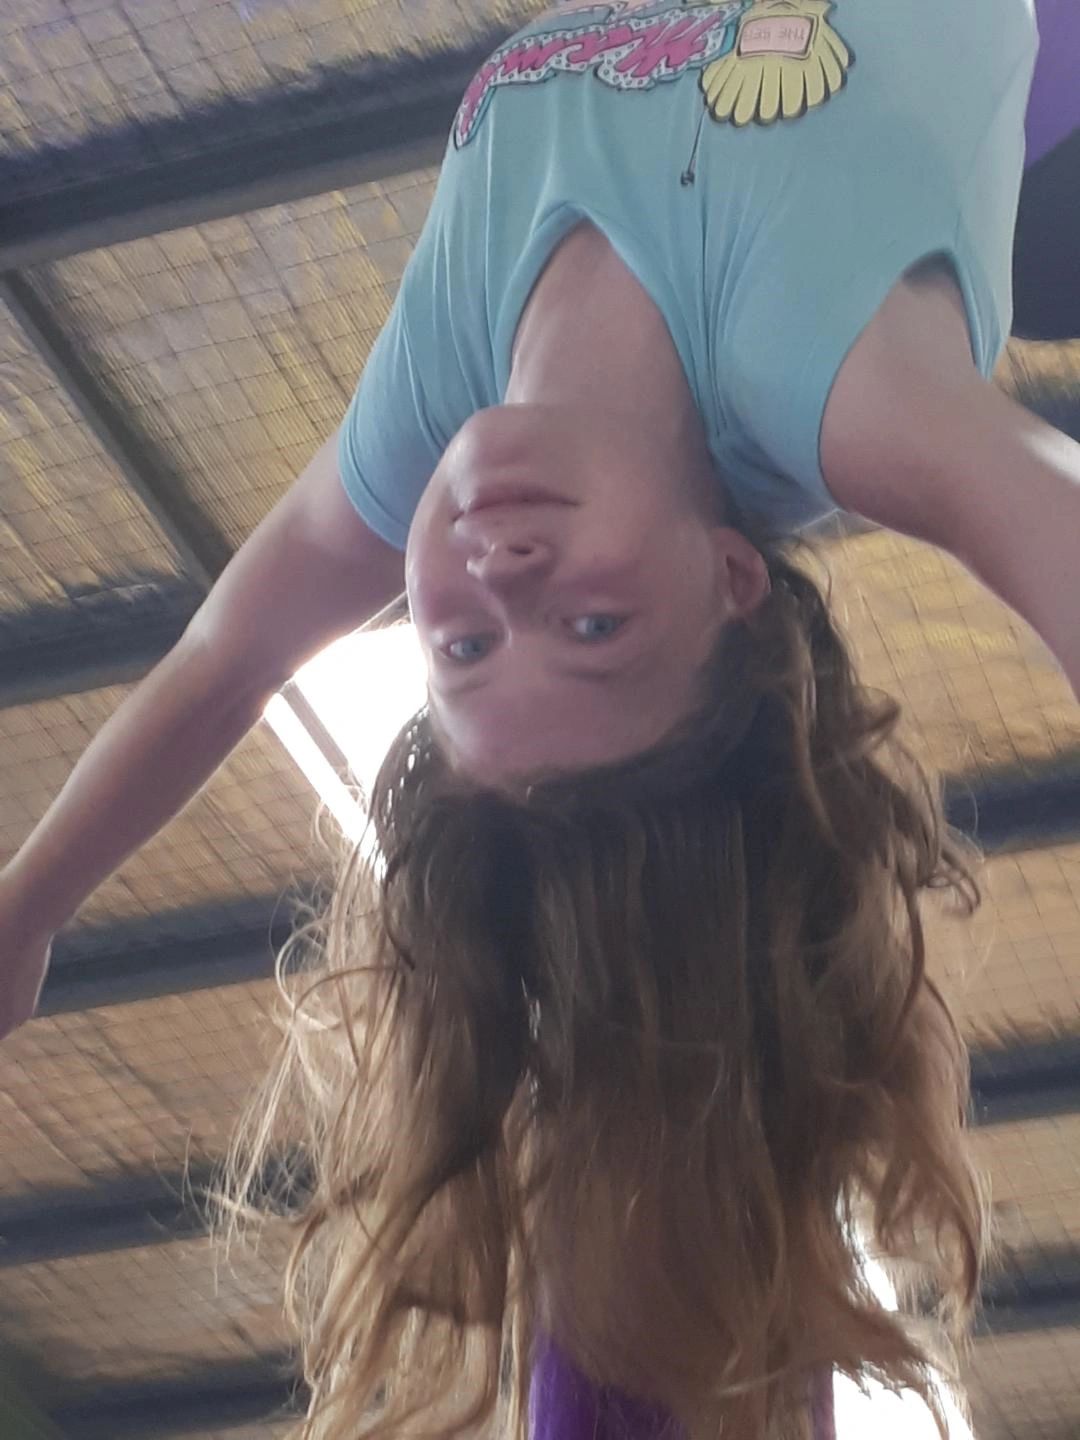 Aerial Silks. Aerials. Aerial dance. Hanging upside down